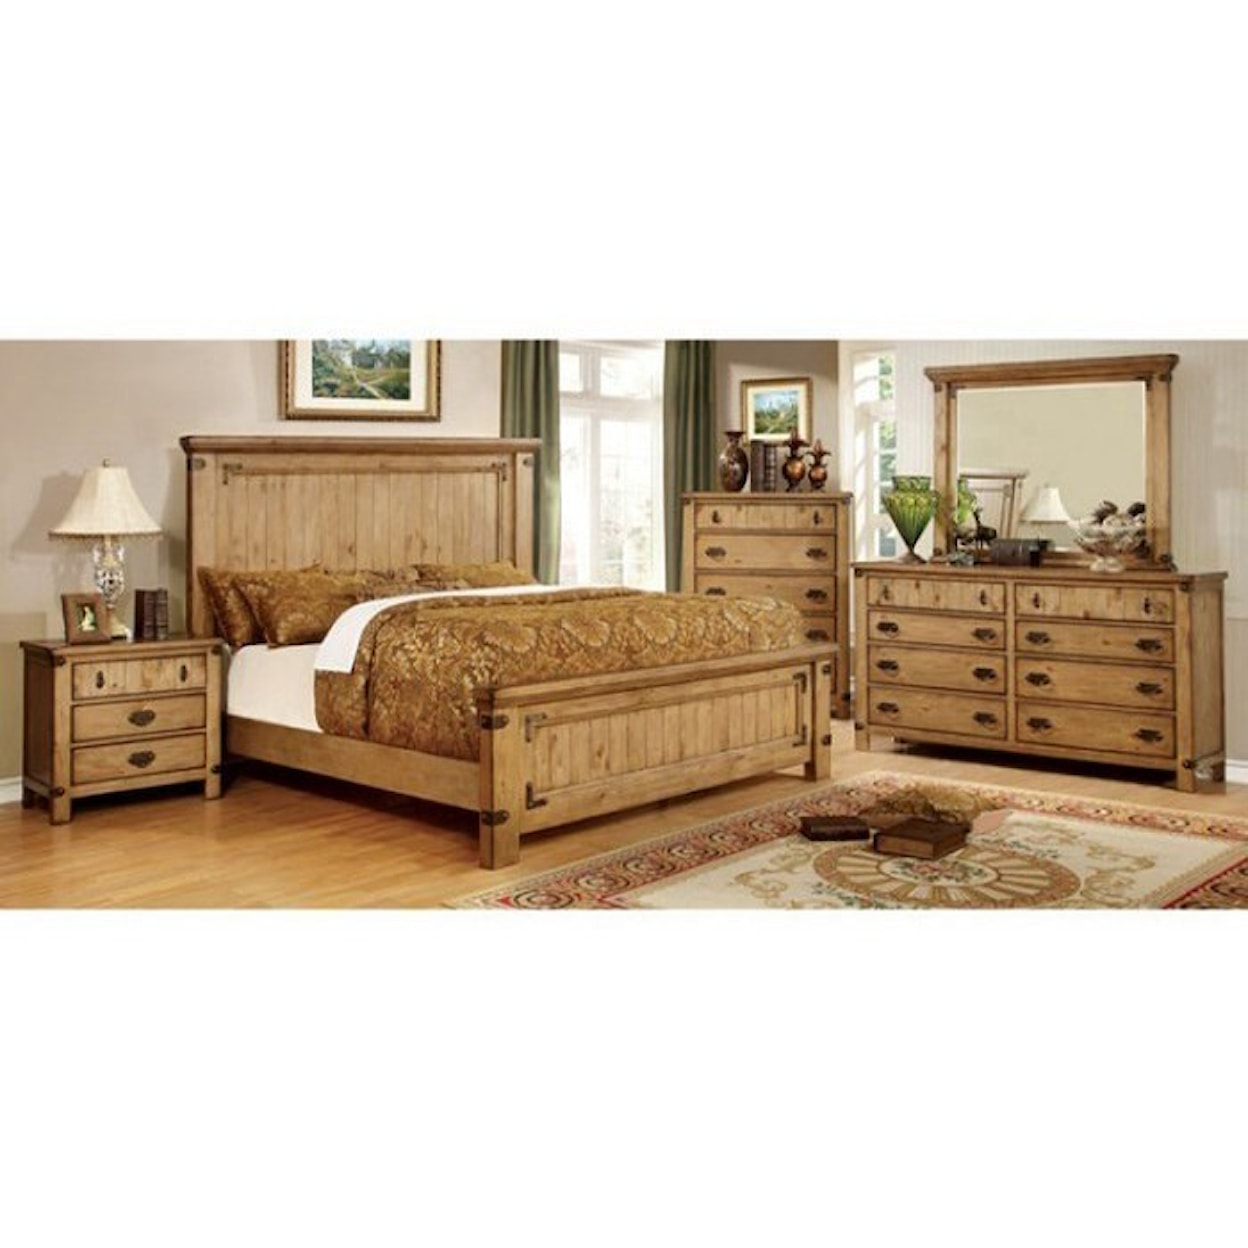 Furniture of America Pioneer King Bedroom Group